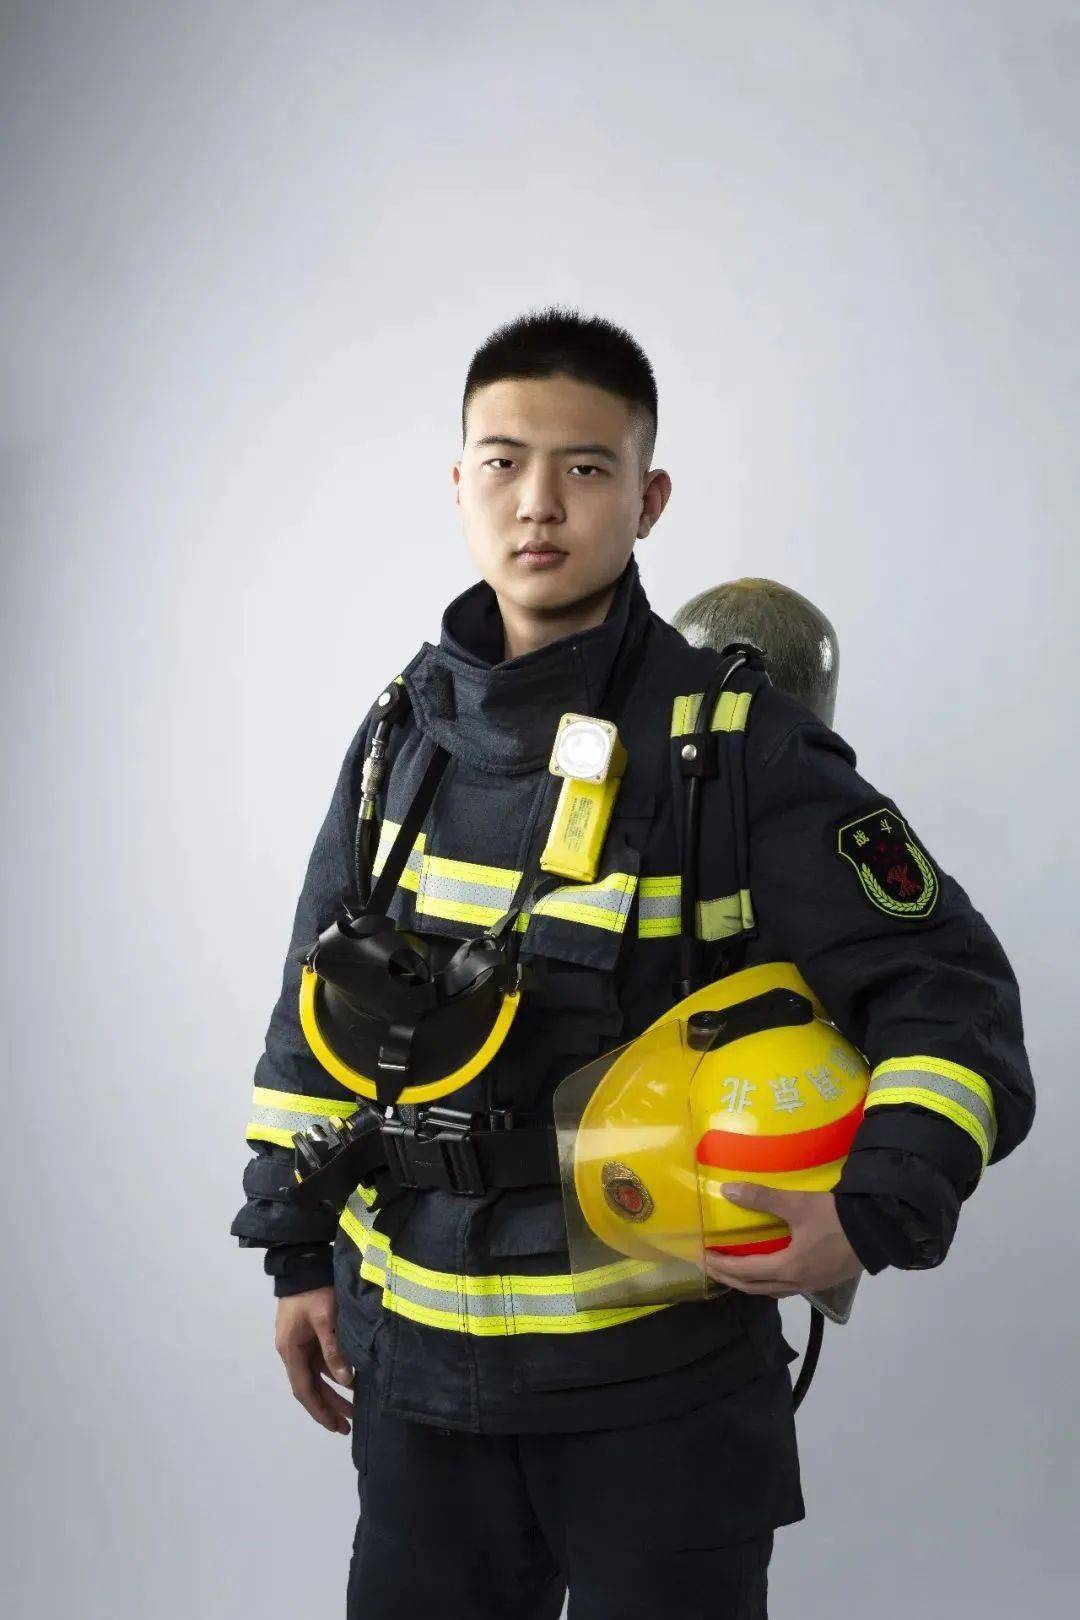 【通告】北京市丰台区消防救援支队2022年度第二批政府专职消防员招聘